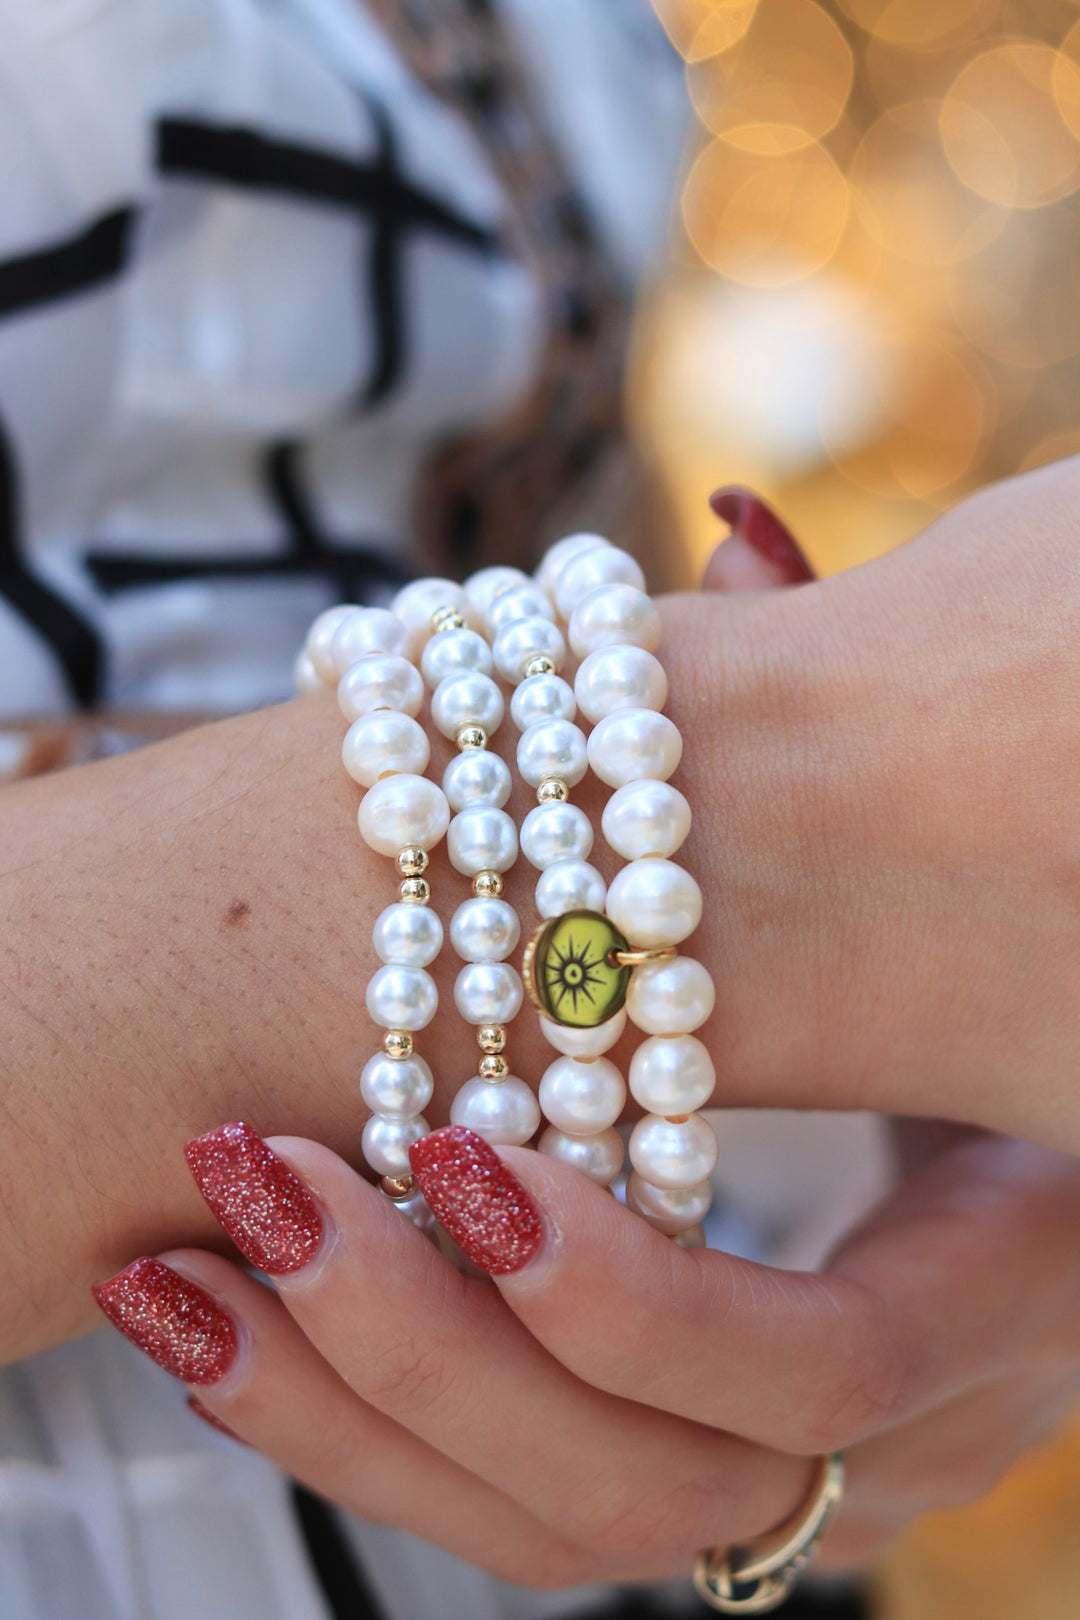 freshwater-pearls-bracelet-gold-filled-jessica-santander